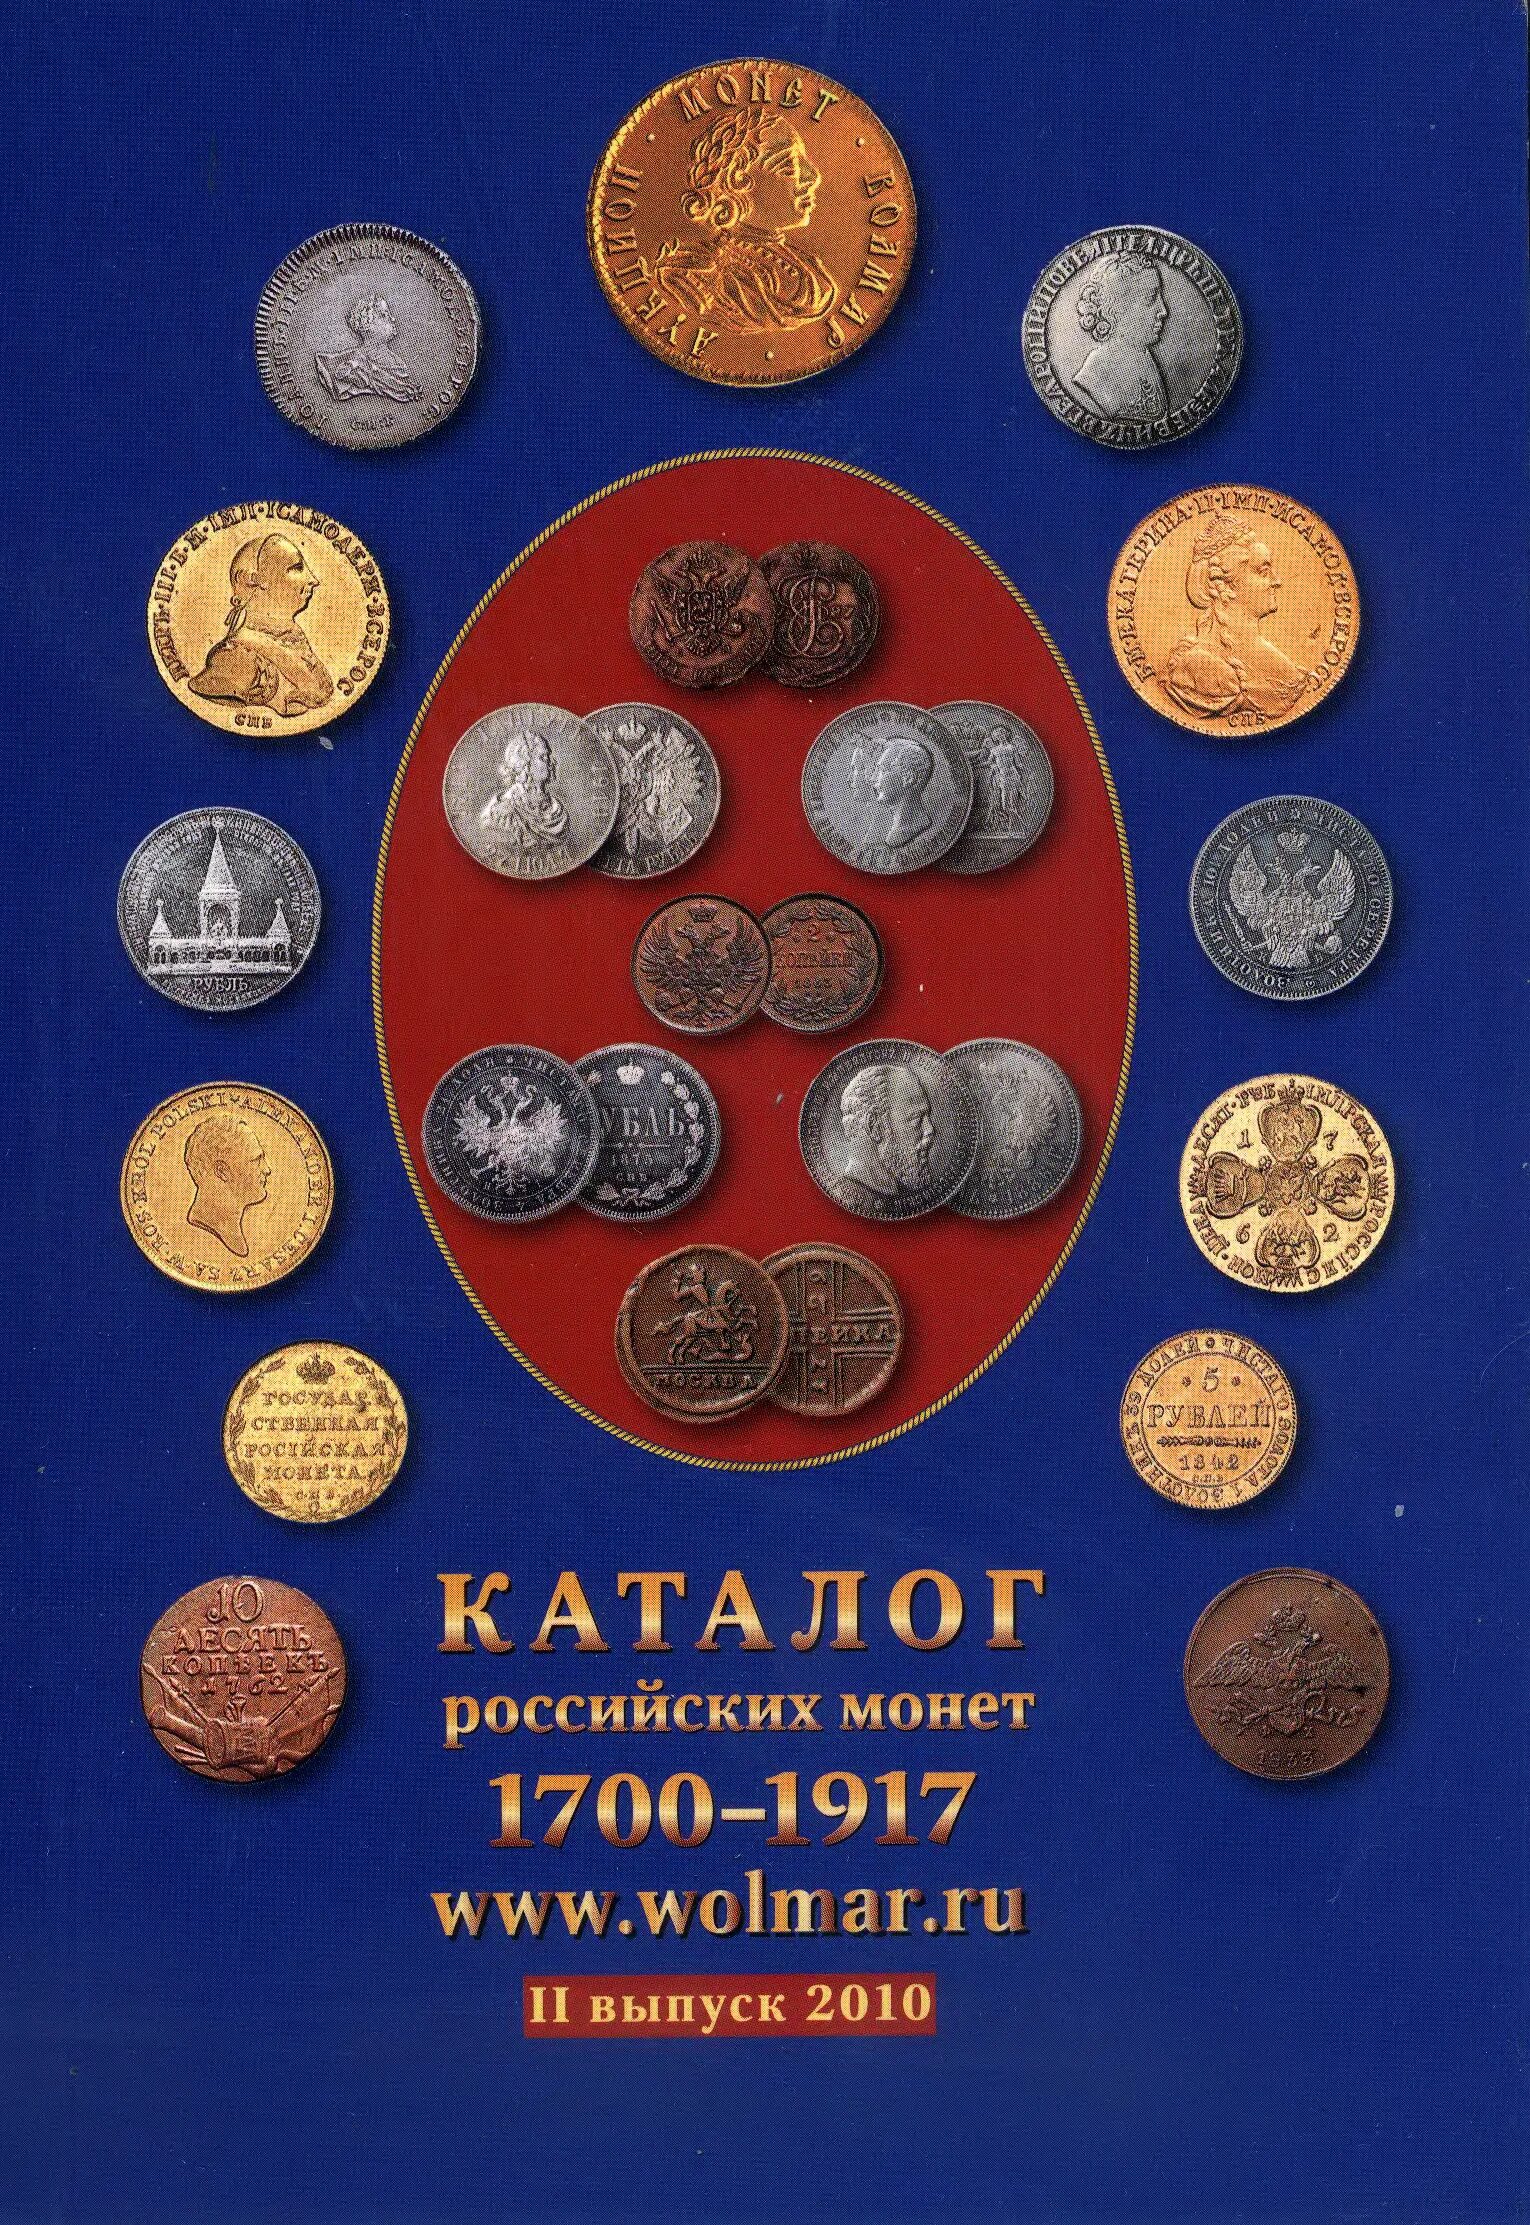 Монеты царские 1700-1917. 1700-1917 Монеты обложка. Каталог монет. Каталоги по монетам.